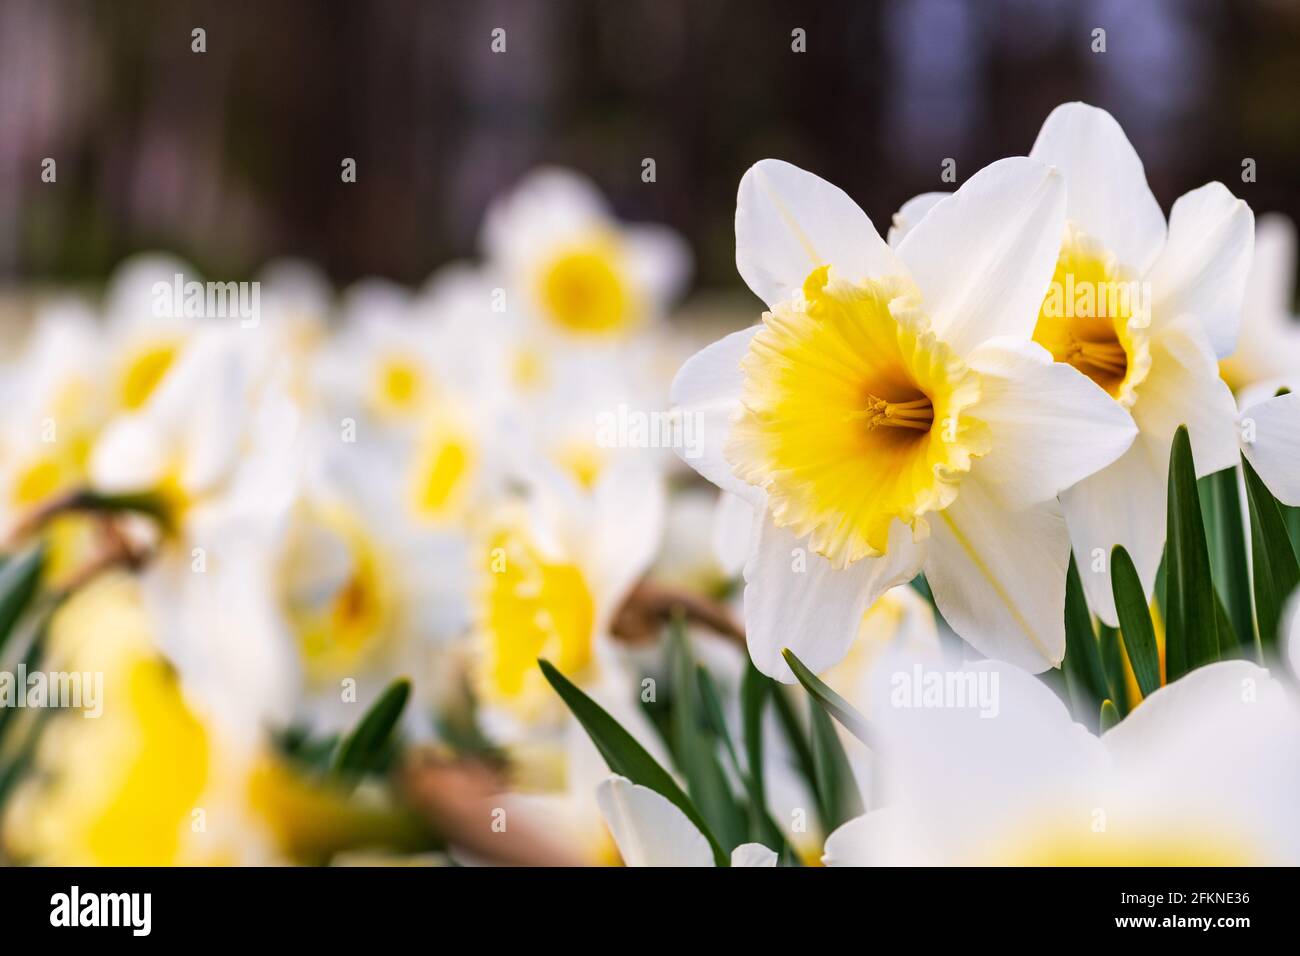 Magnifique fleur de jonquille jaune et blanche, narcisse, fleur vivace de printemps et plantes parmi l'herbe verte dans un champ, un parc ou un jardin, gros plan Banque D'Images